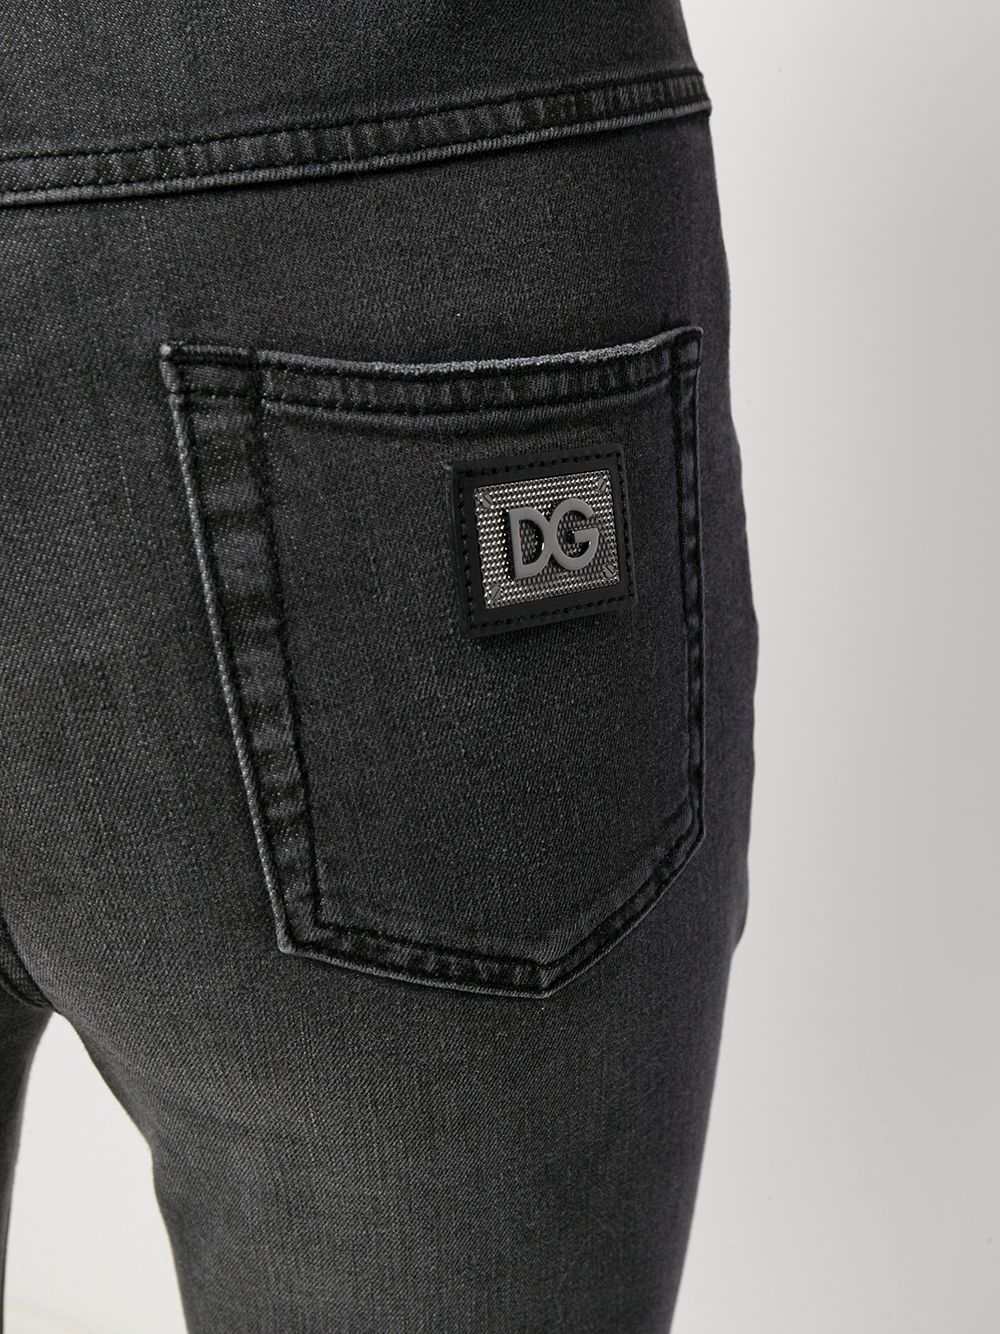 фото Dolce & gabbana джинсы с завышенной талией